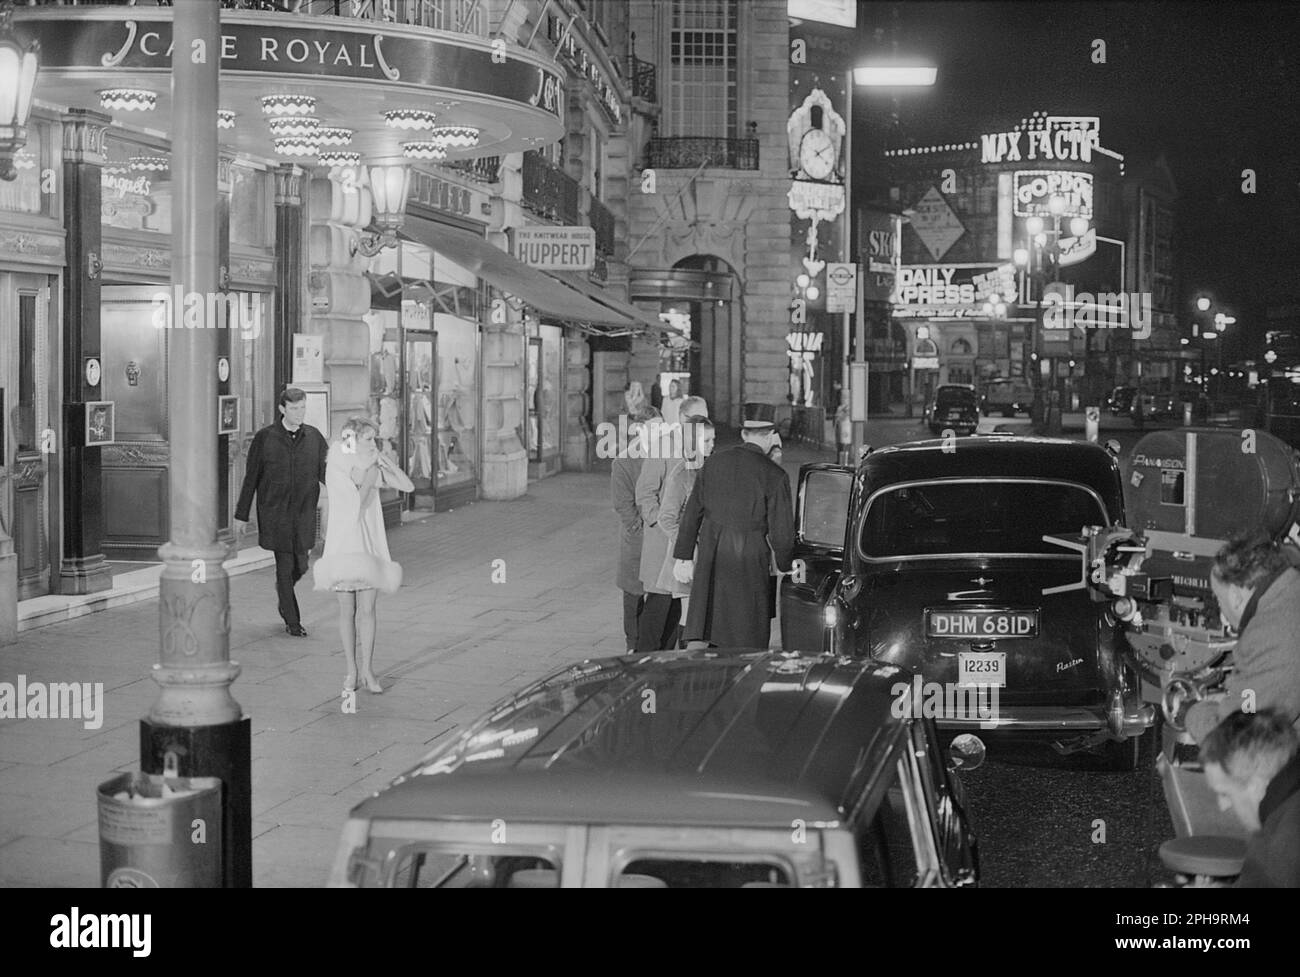 Londres. circa.1967. Una fotografía de Mia Farrow y Laurence Harvey fuera del Café Royal, Regent Street en Piccadilly, Londres, tomada entre bastidores durante el rodaje de la película de espionaje neo-noir británica, A Dandy in Aspic. La película fue dirigida por Anthony Mann. Foto de stock